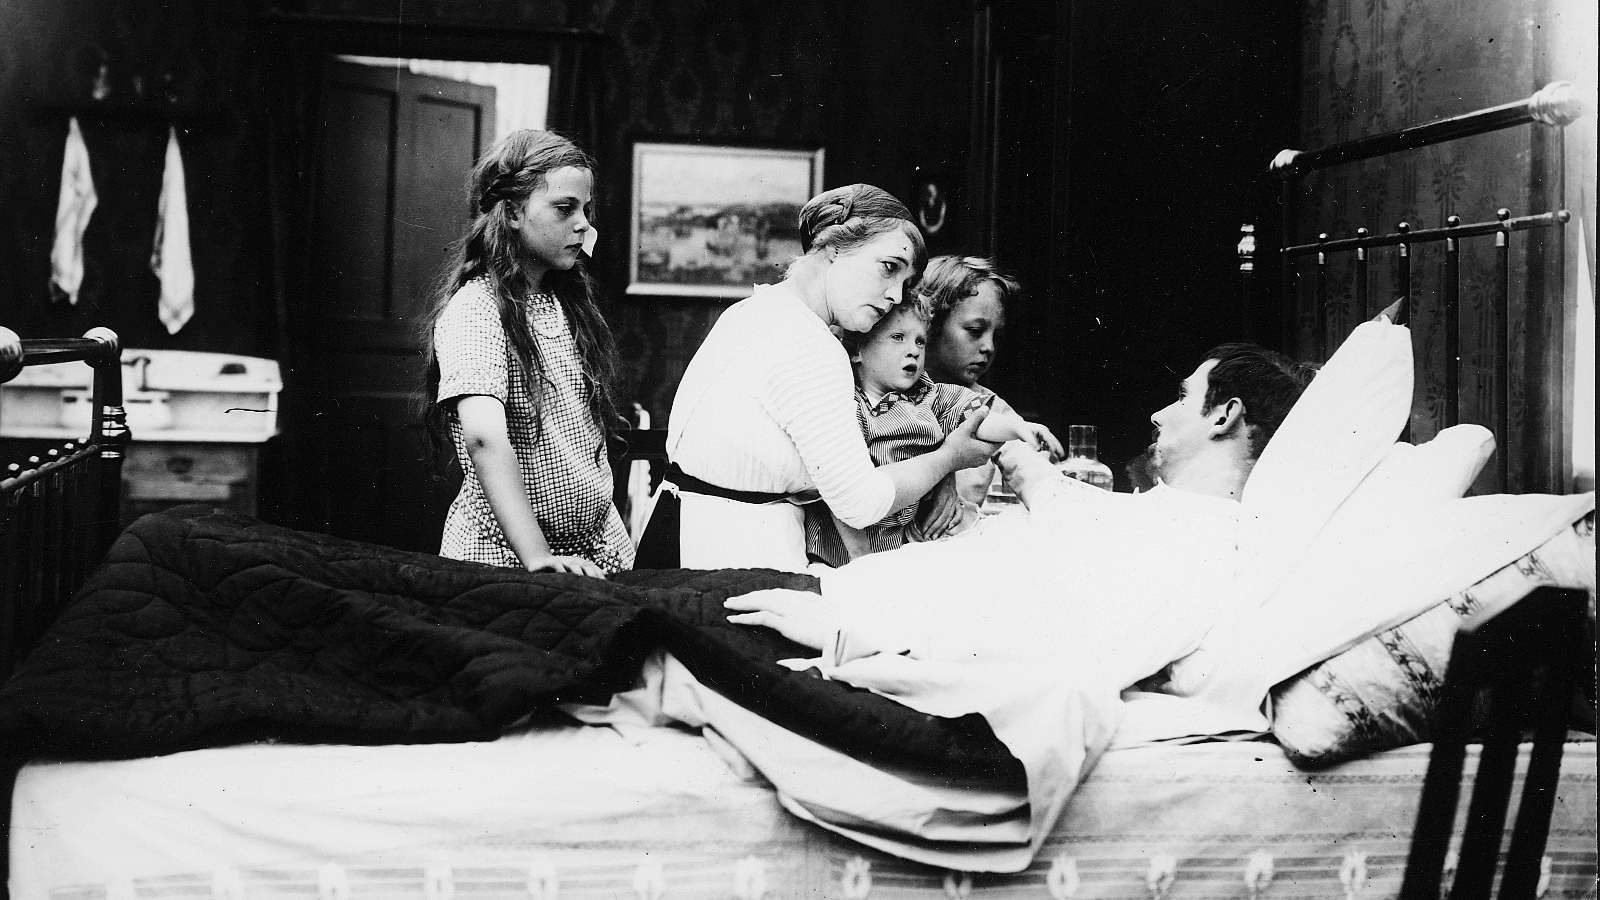 Kuvassa on mies makaamassa sairaana sängyssä ja sängyn vieressä ovat vaimo istumassa pienin lapsi sylissään. Takana seisoo tytär ja toinen kurkkii äidin takaa.